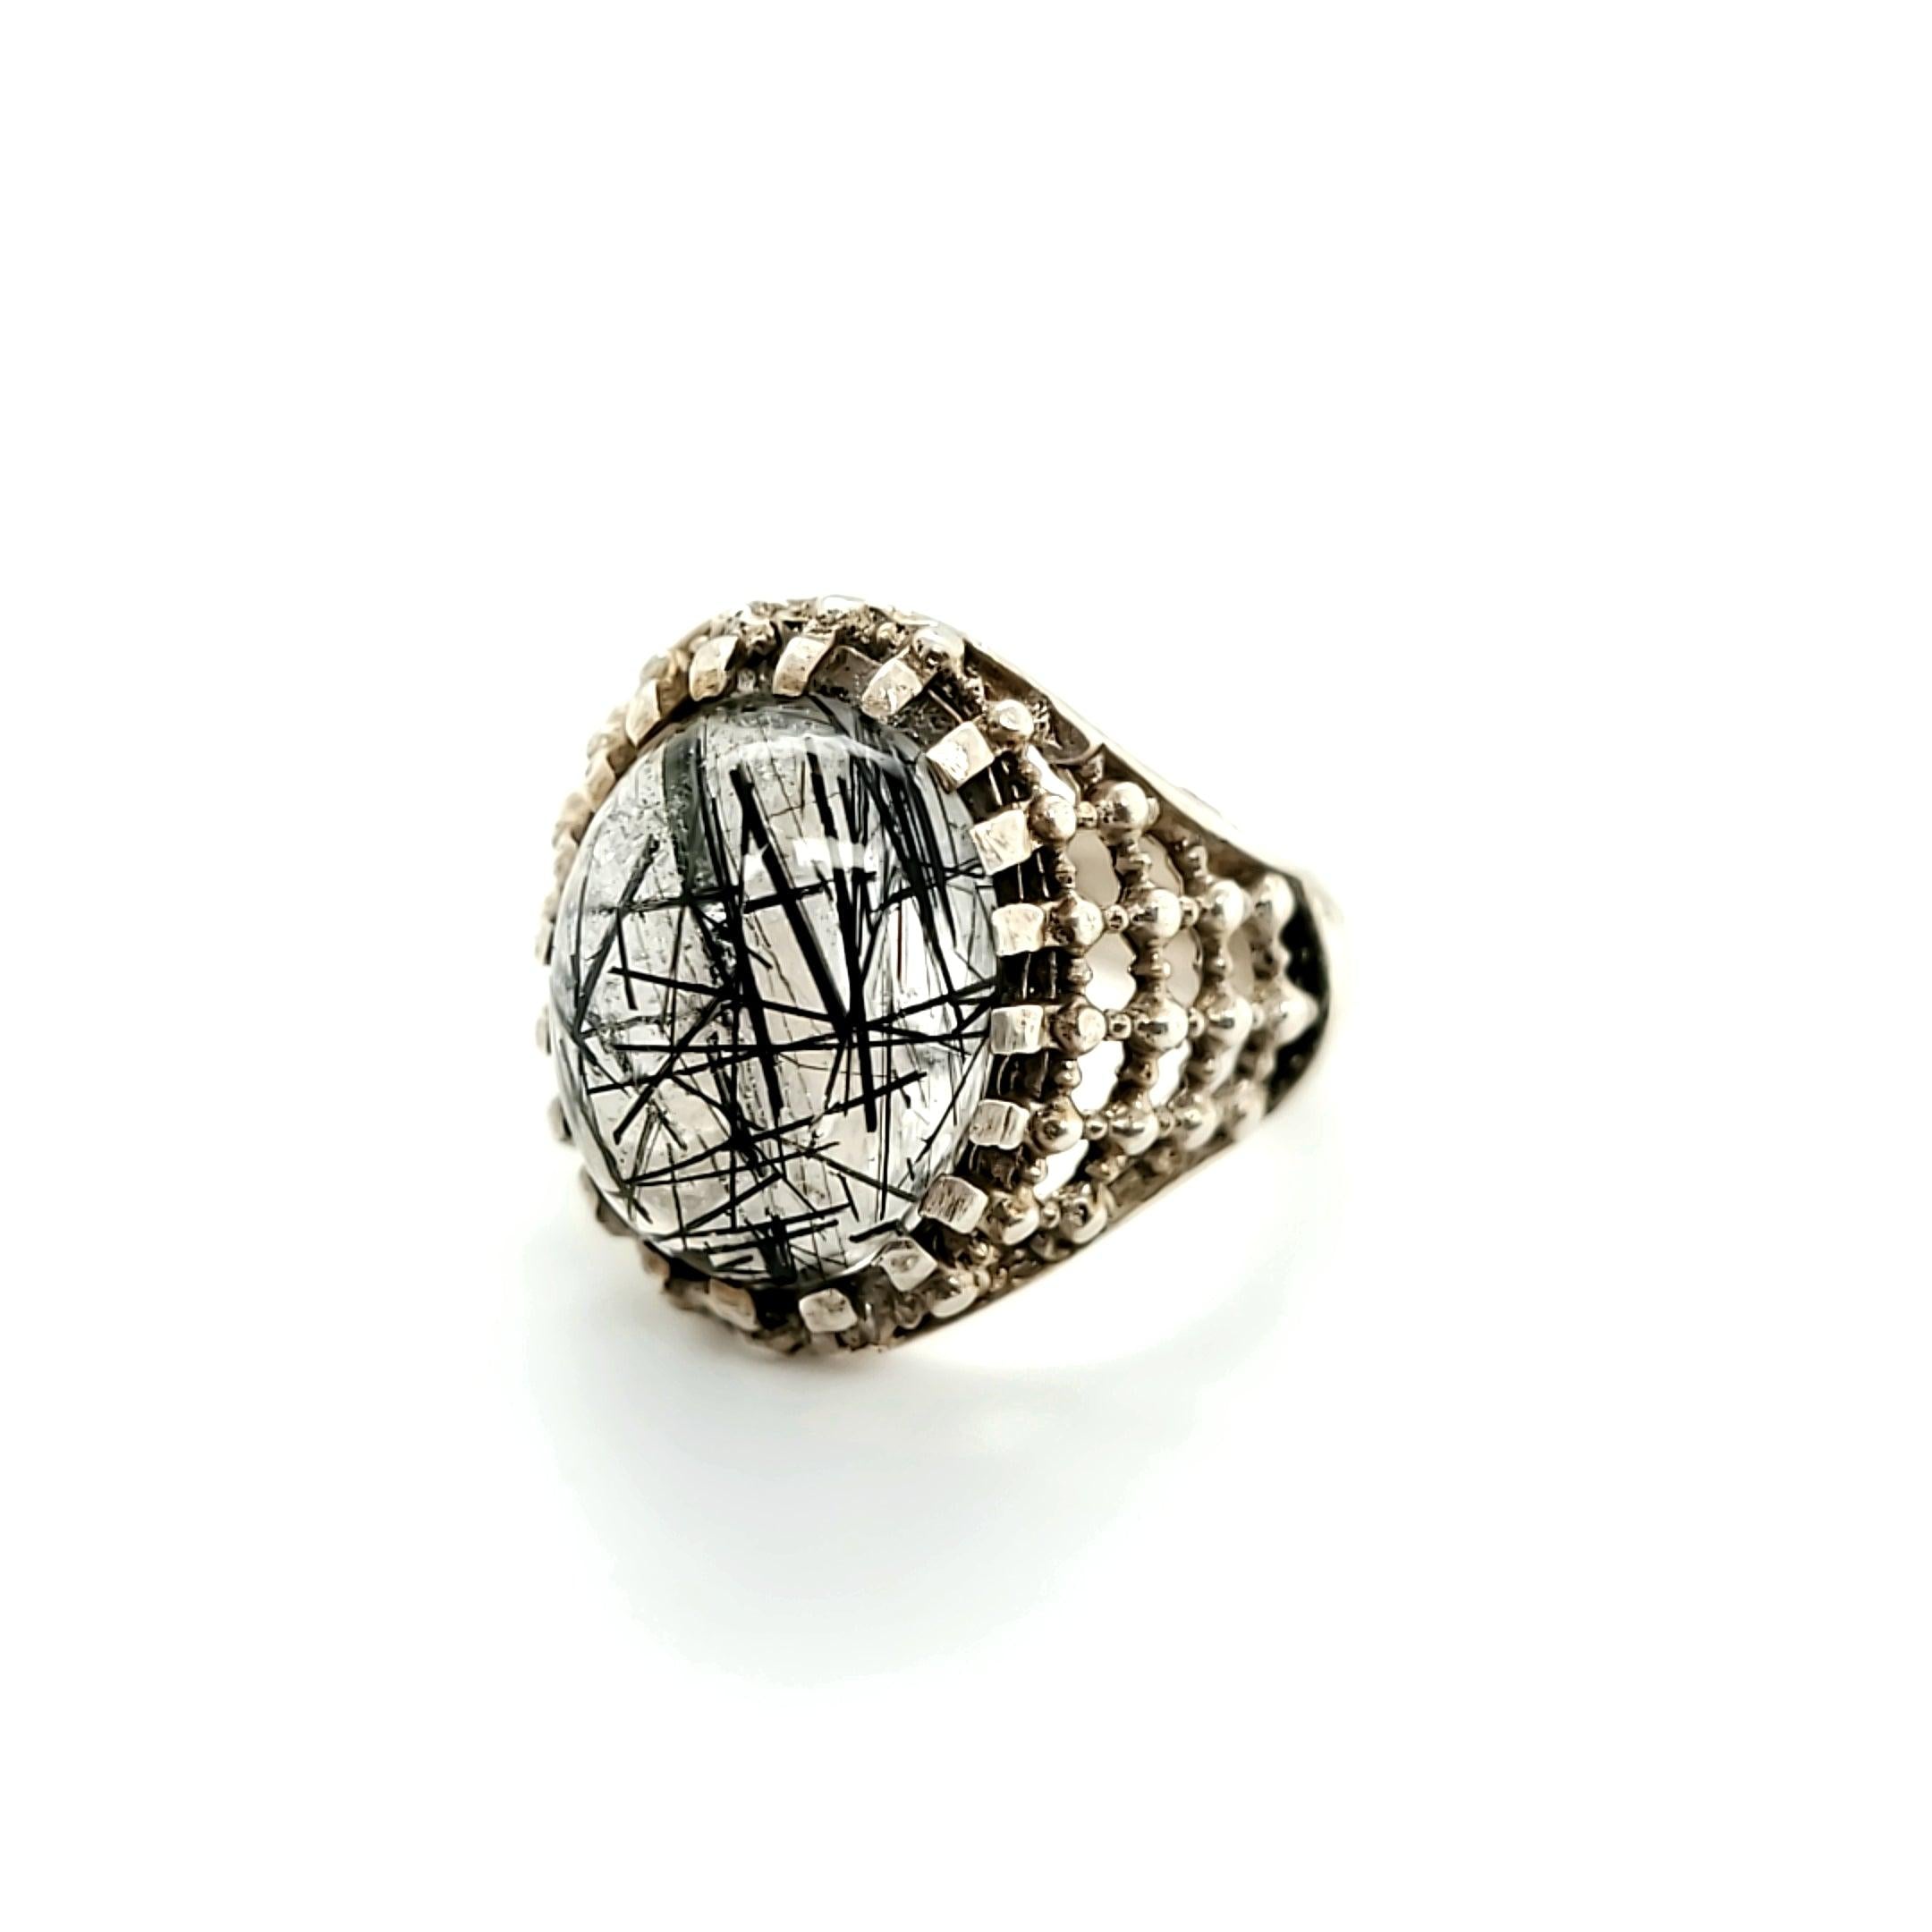 Men's Handmade Rutilated Quartz Ring in Sterling Silver - The Rutile Ltd